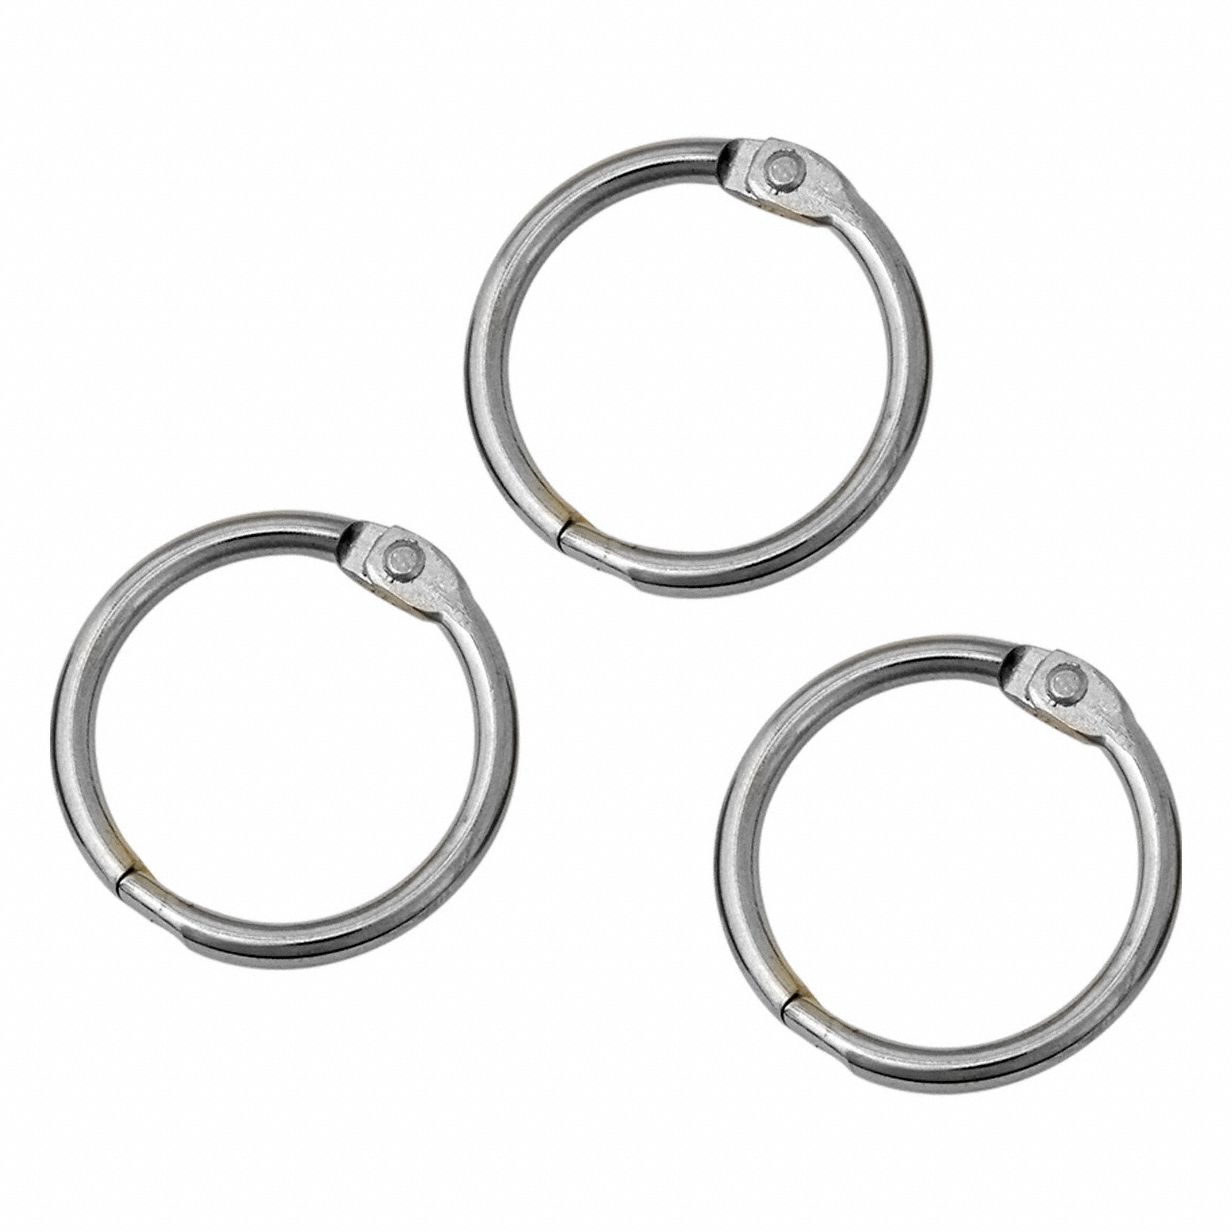 Ring: Binder, 1 in Binder, Silver, Metal, 50 PK